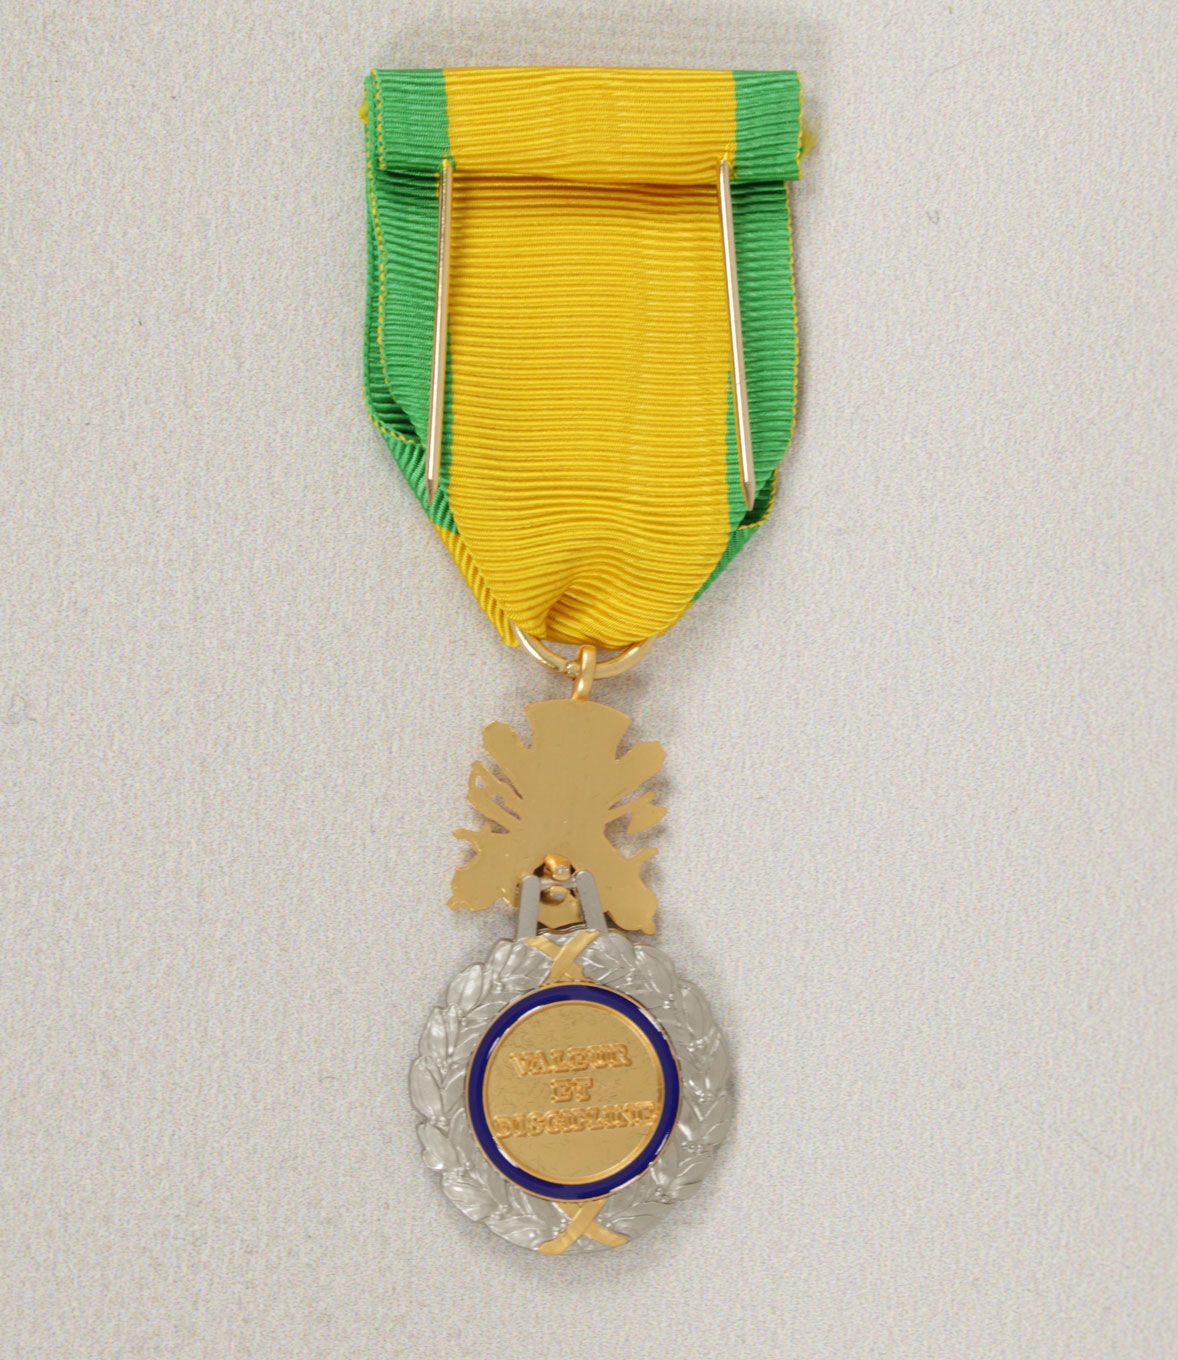 Médaille DMB Products PROTECTION MILITAIRE DU TERRITOIRE sur